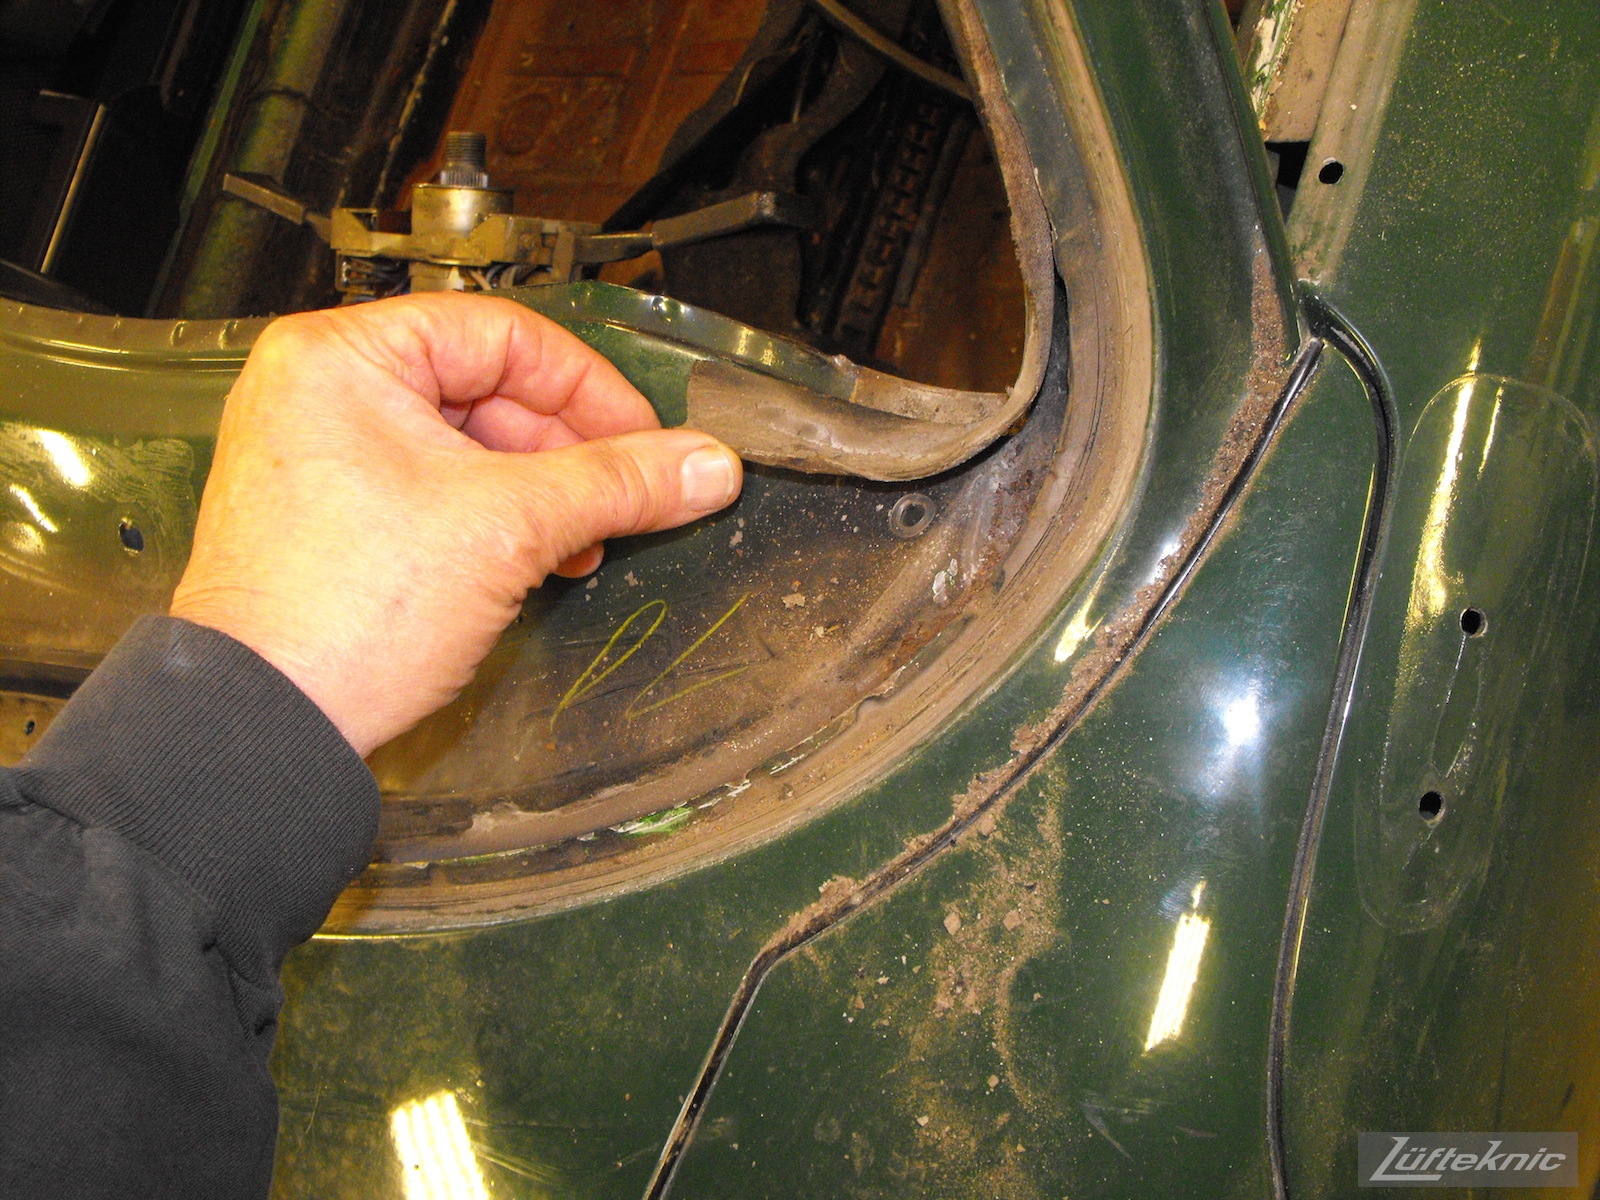 front dashboard details on an Irish Green Porsche 912 undergoing restoration at Lufteknic.